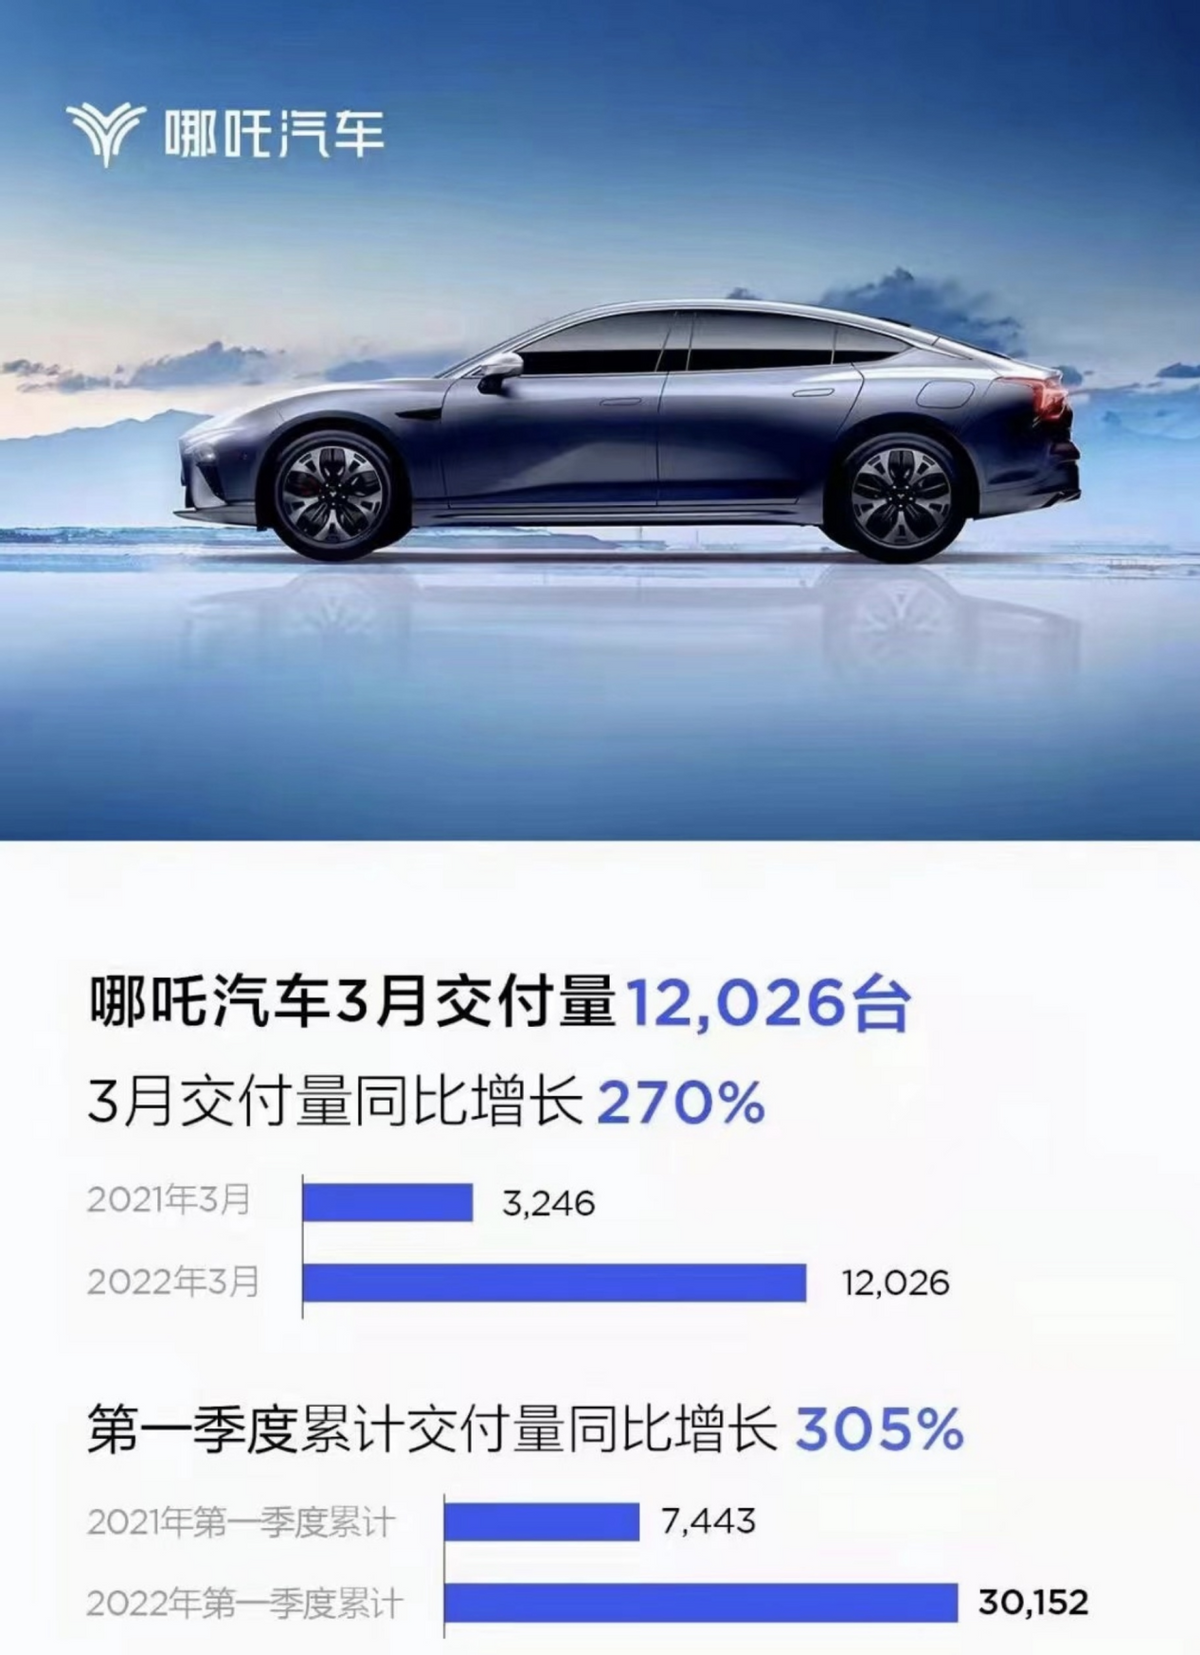 3月交付量快讯|“埃小蔚”来报道，三月新能源汽车销量埃安暂居第一，小鹏第二